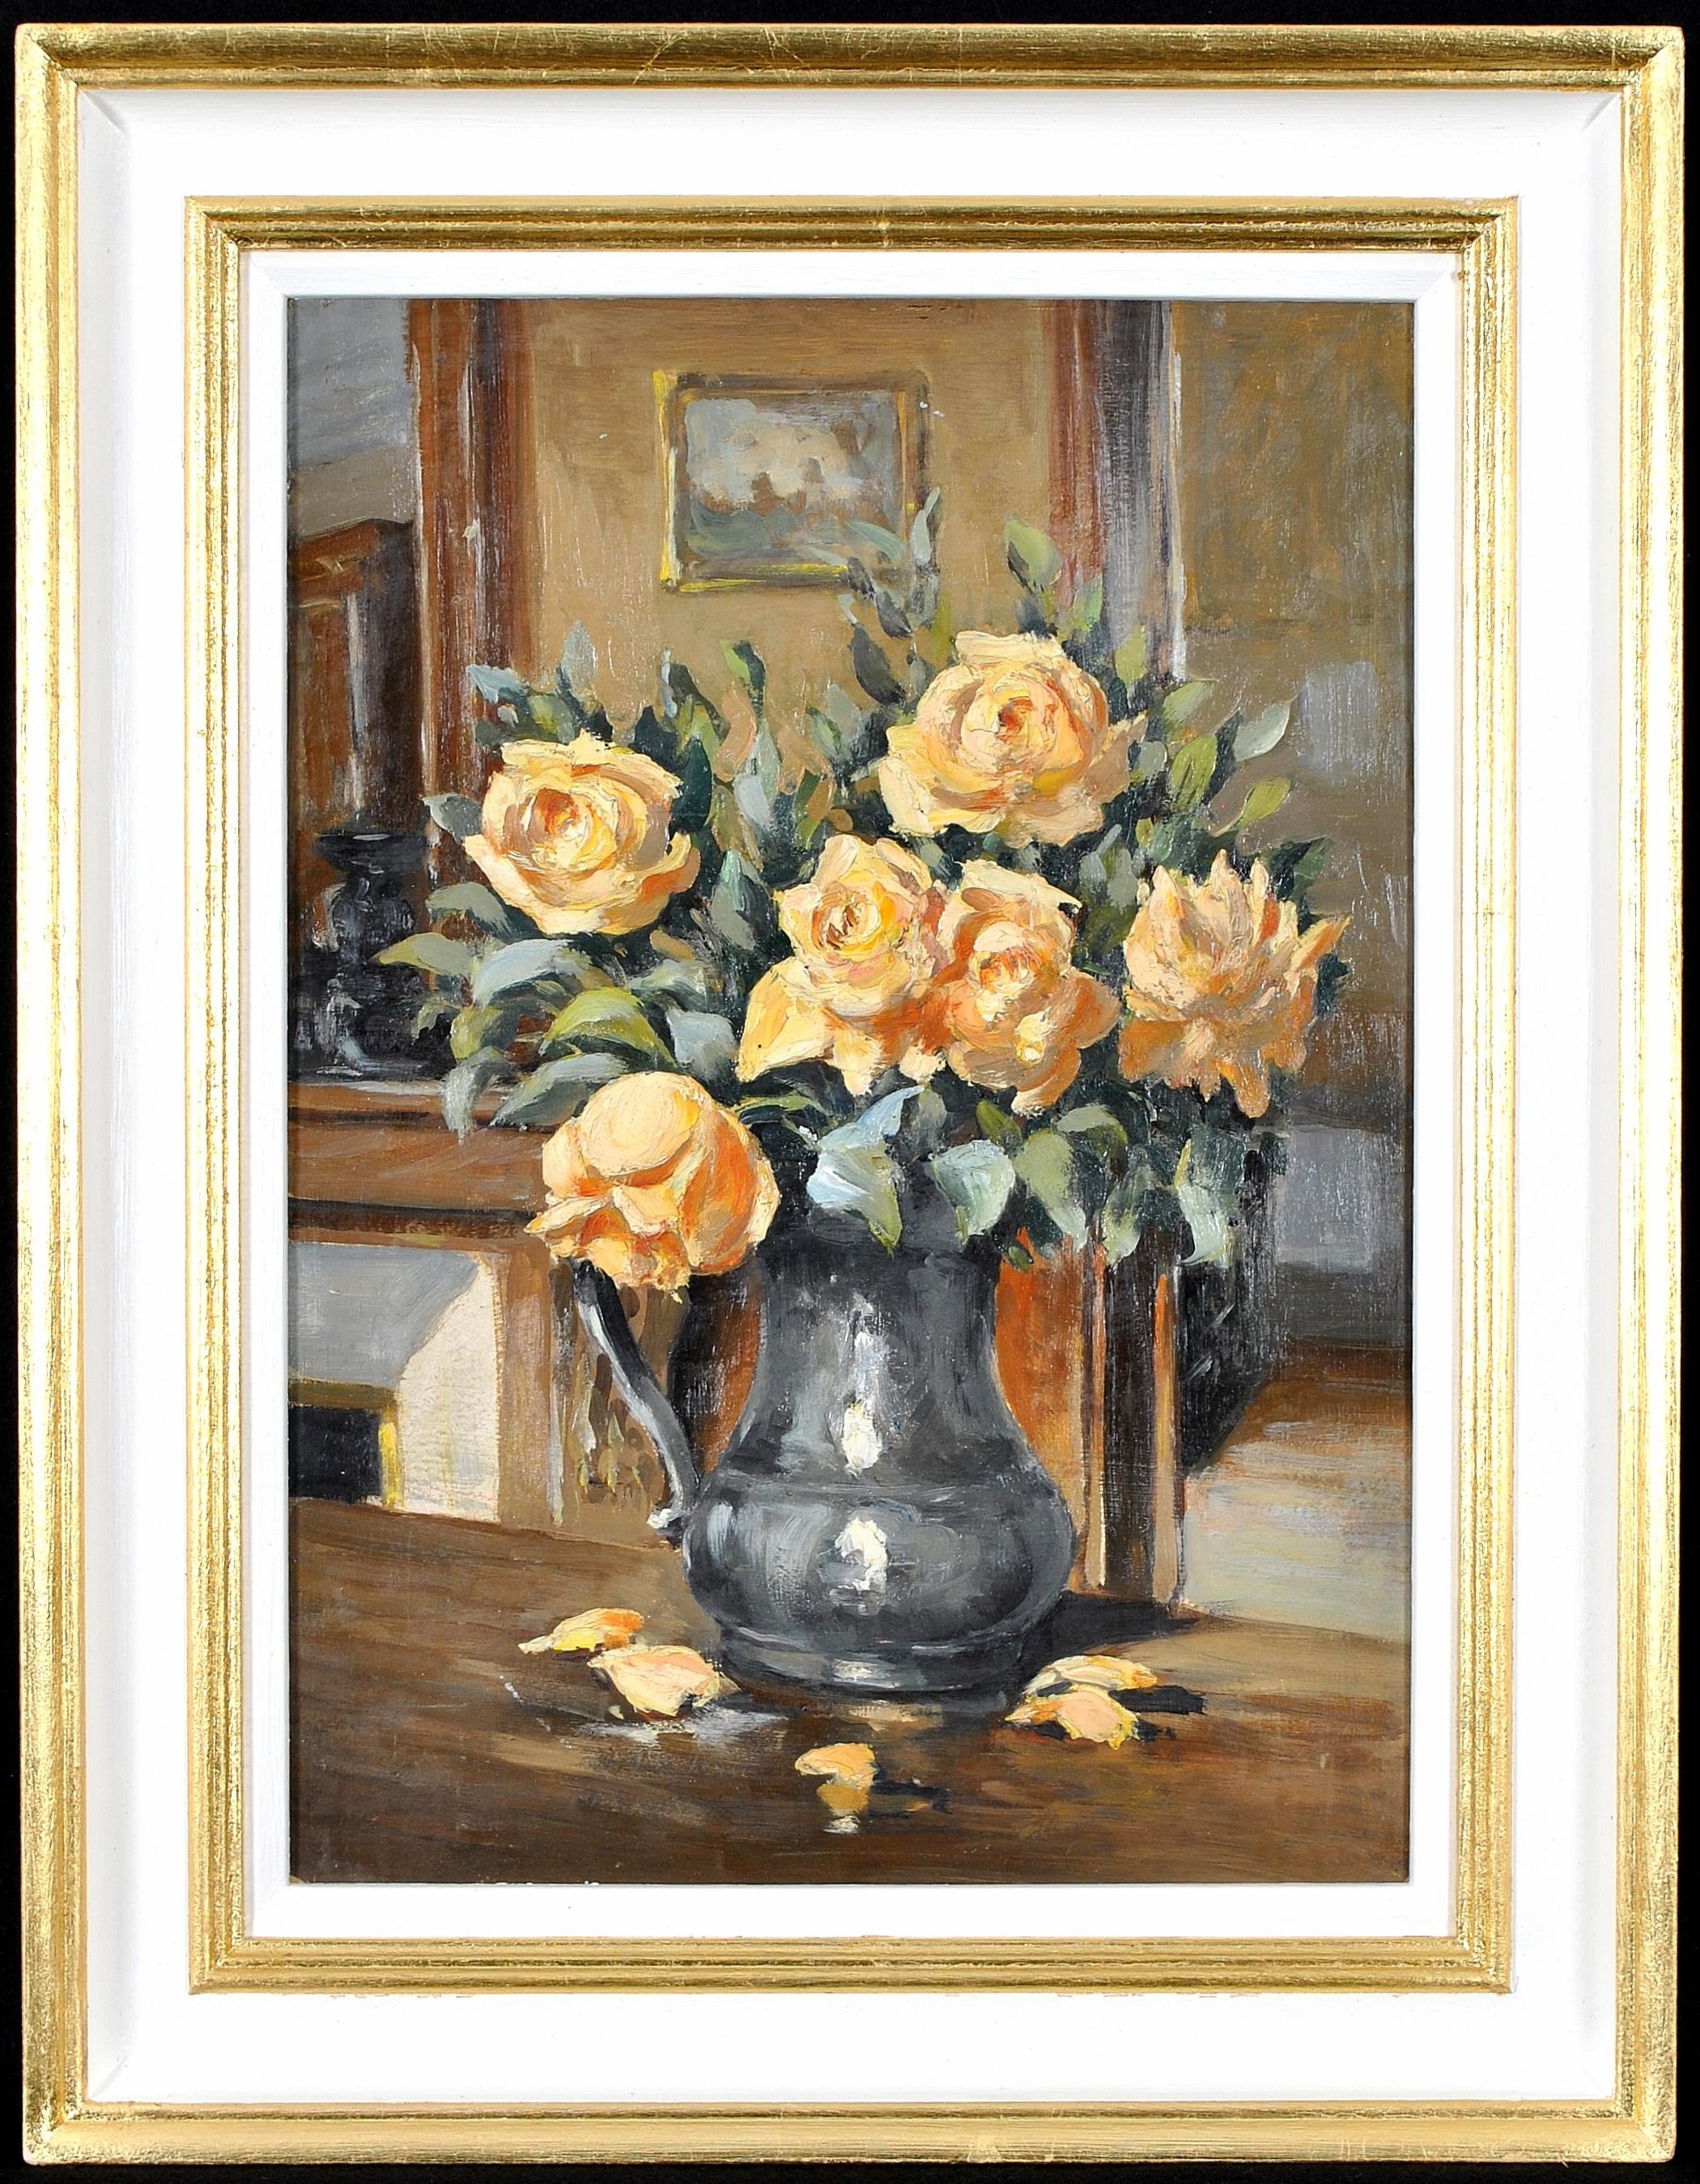 Still-Life Painting Early 20th Century French School - Roses dans une cruche - Nature morte à l'huile impressionniste française des années 1920